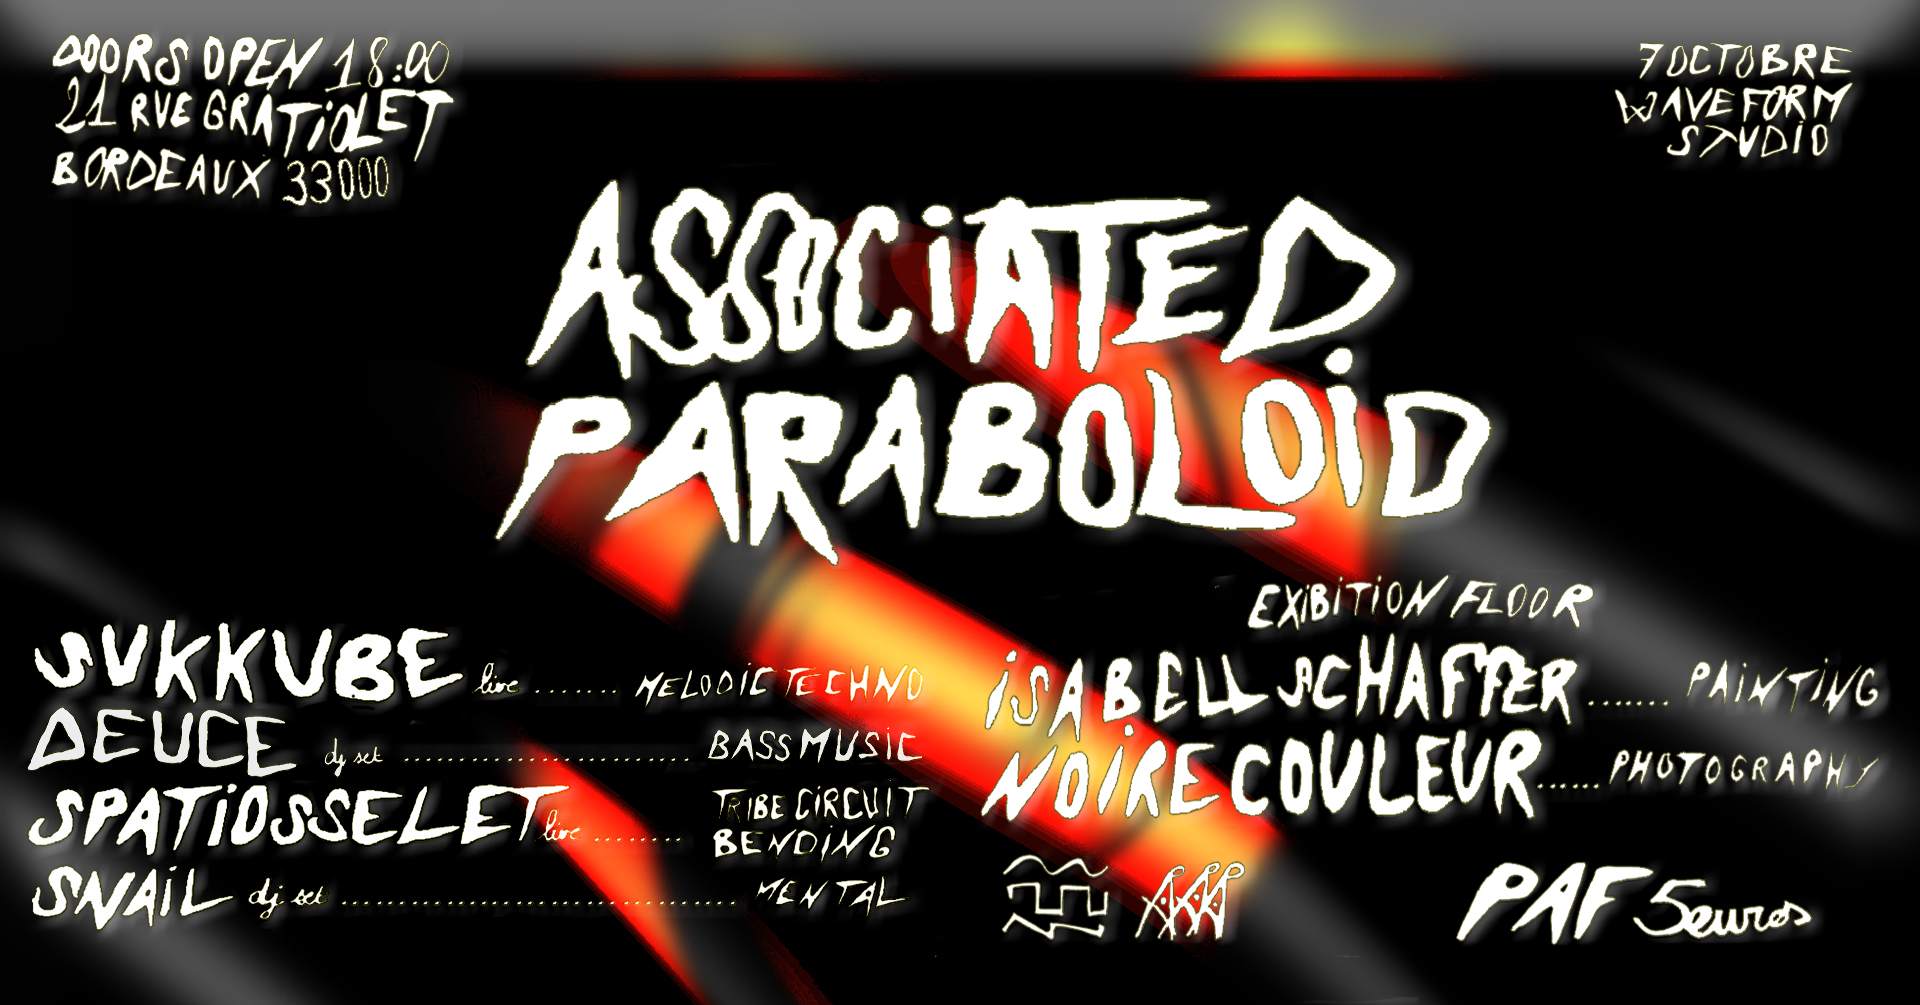 Associated Paraboloid - フライヤー表